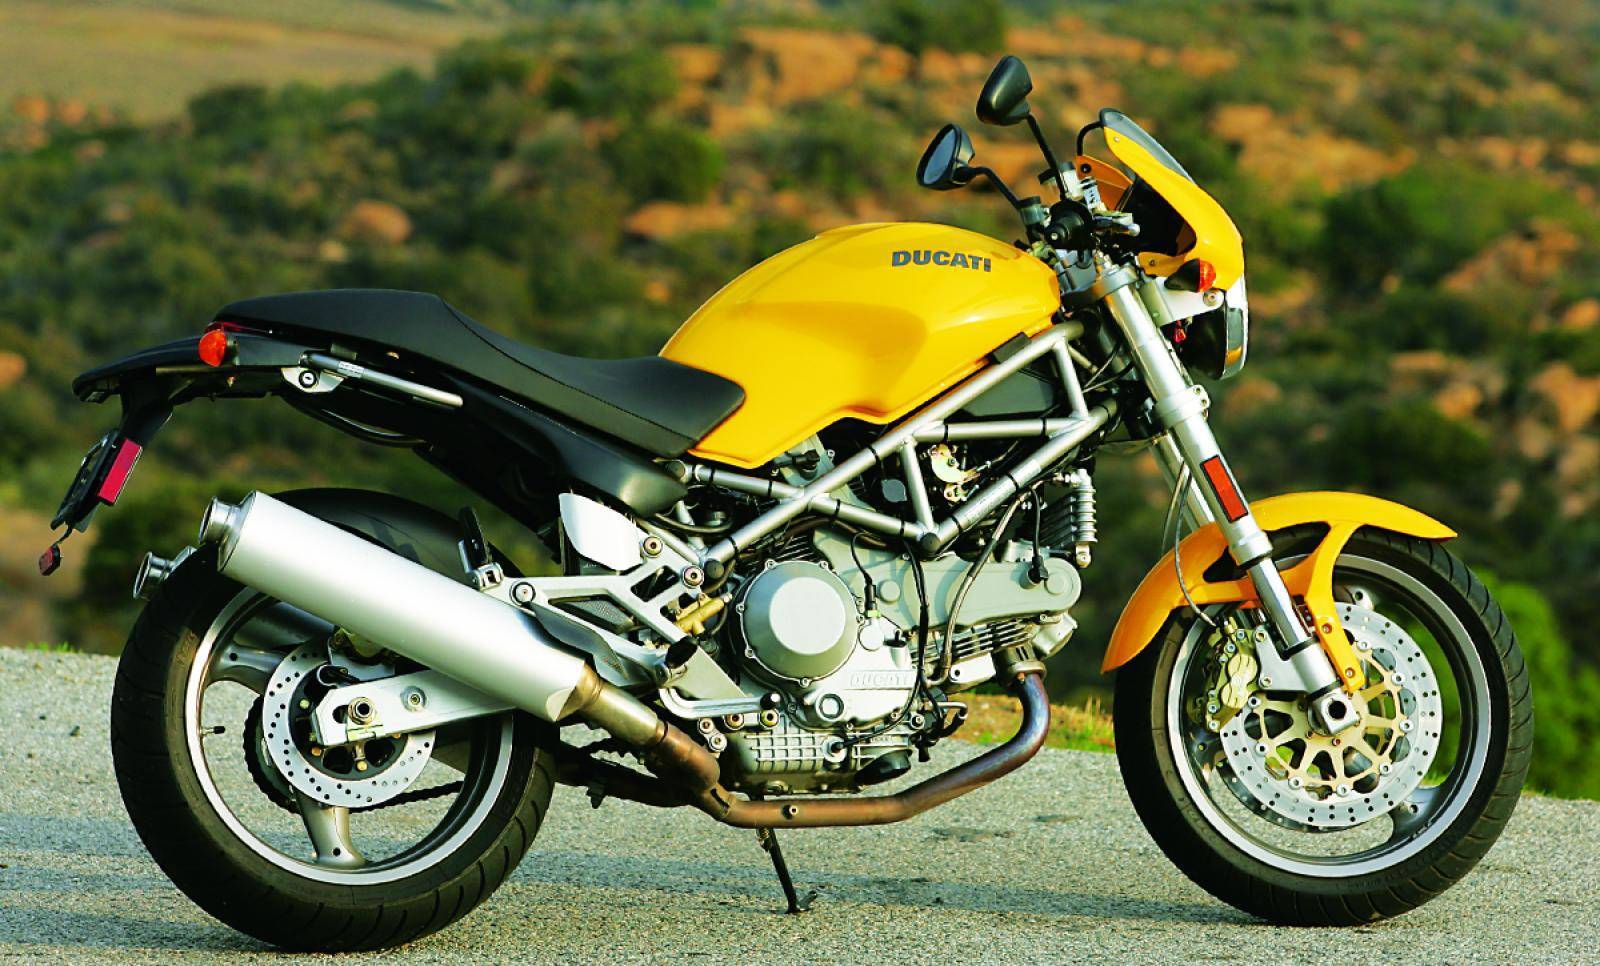 Обзор мотоцикла ducati monster 1100 evo - технические характеристики, фото и видео